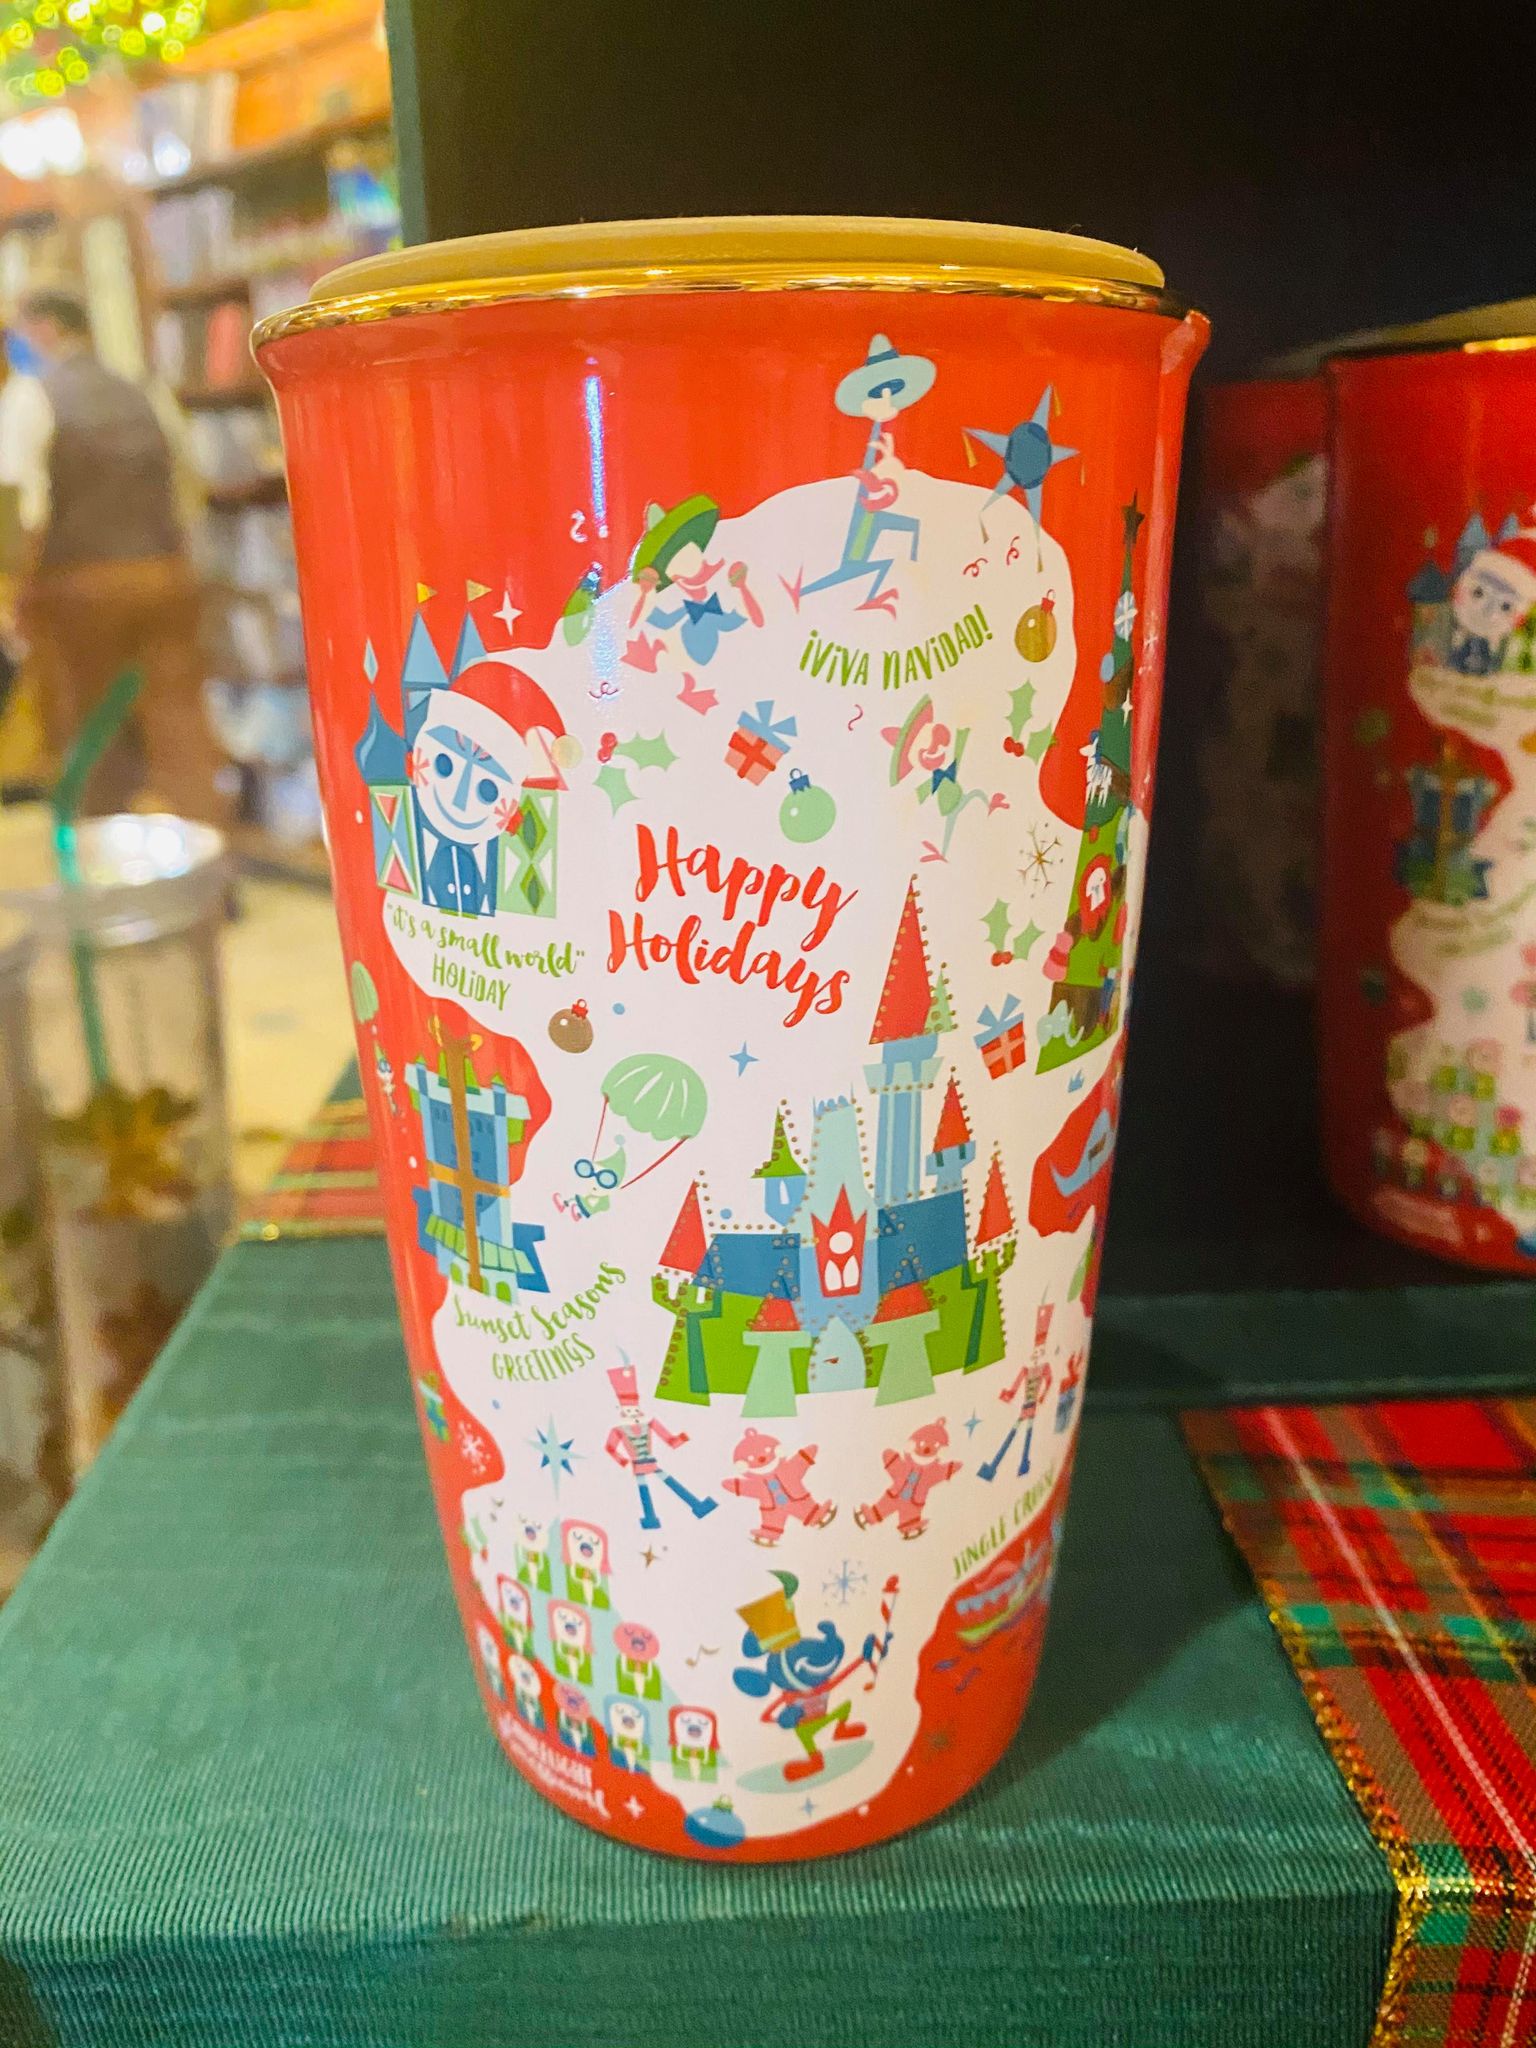 Starbucks holiday mug